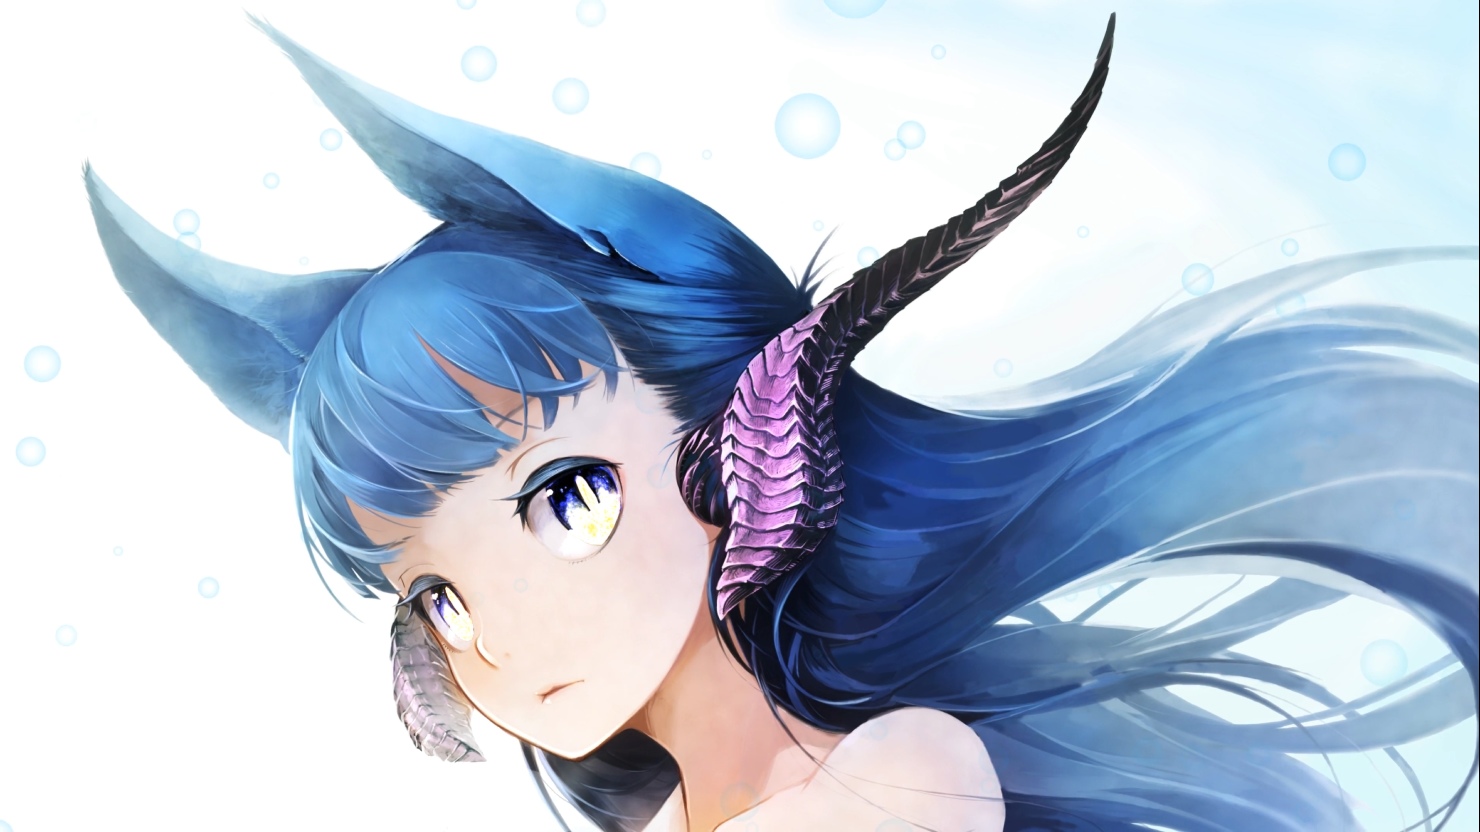 Anime Fantasy Girl 4k Live Wallpaper By Smithjerry On Deviantart